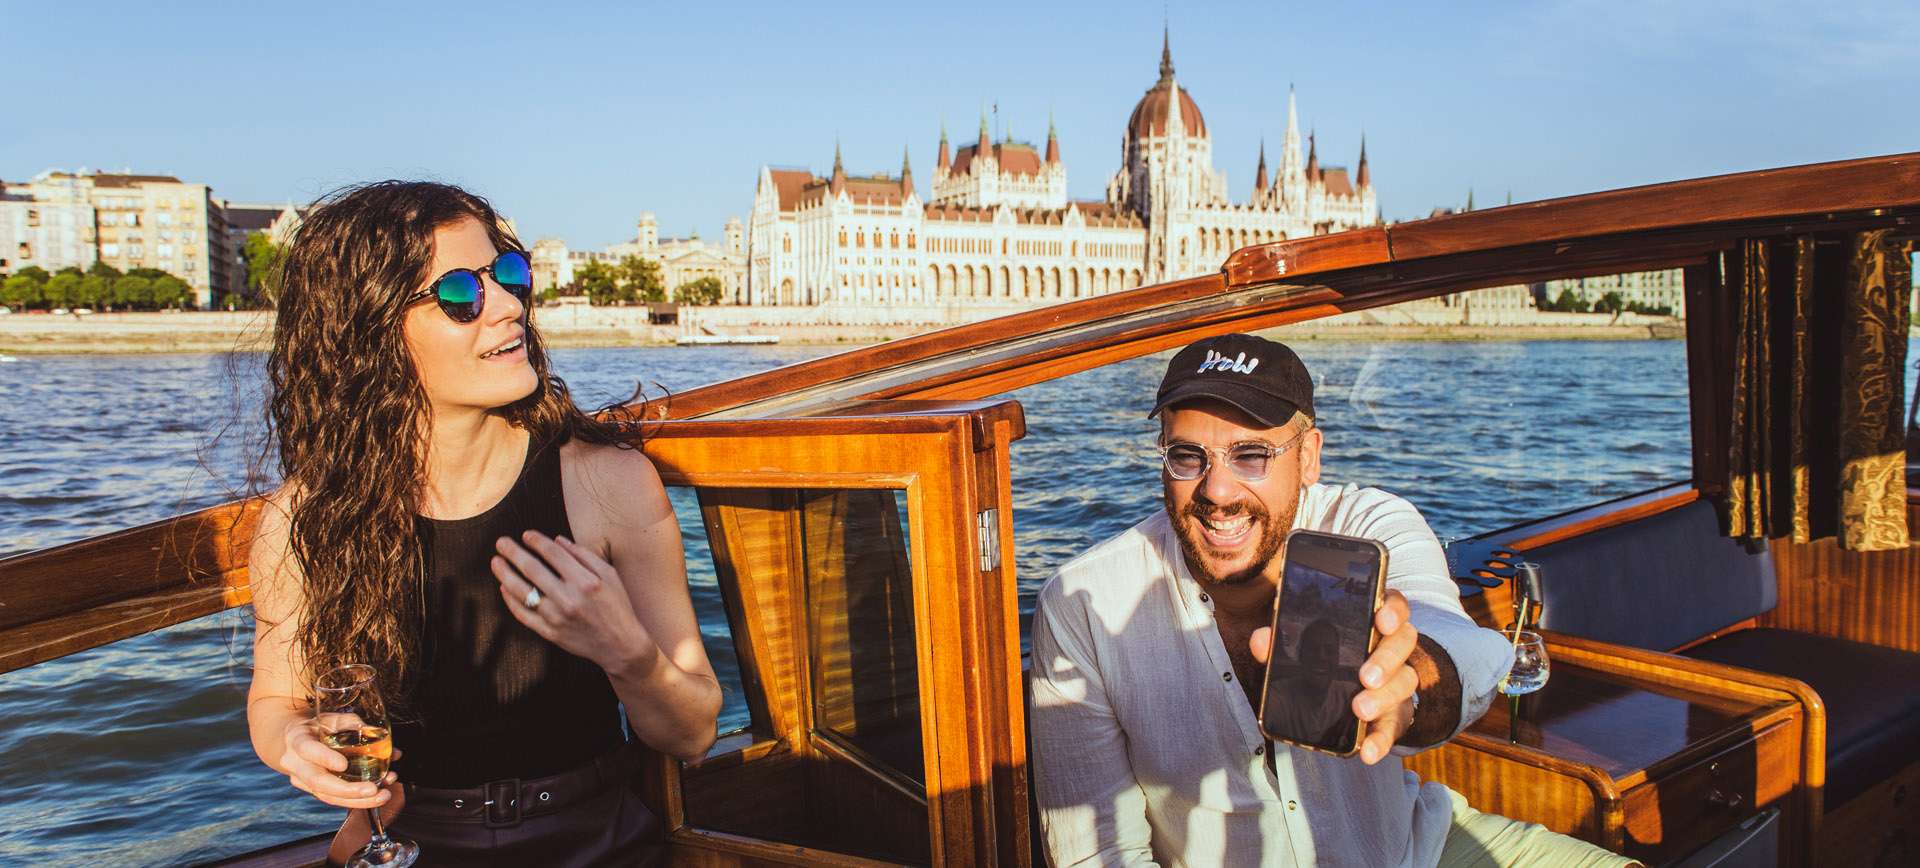 budapest wedding boat ride - elope to europe